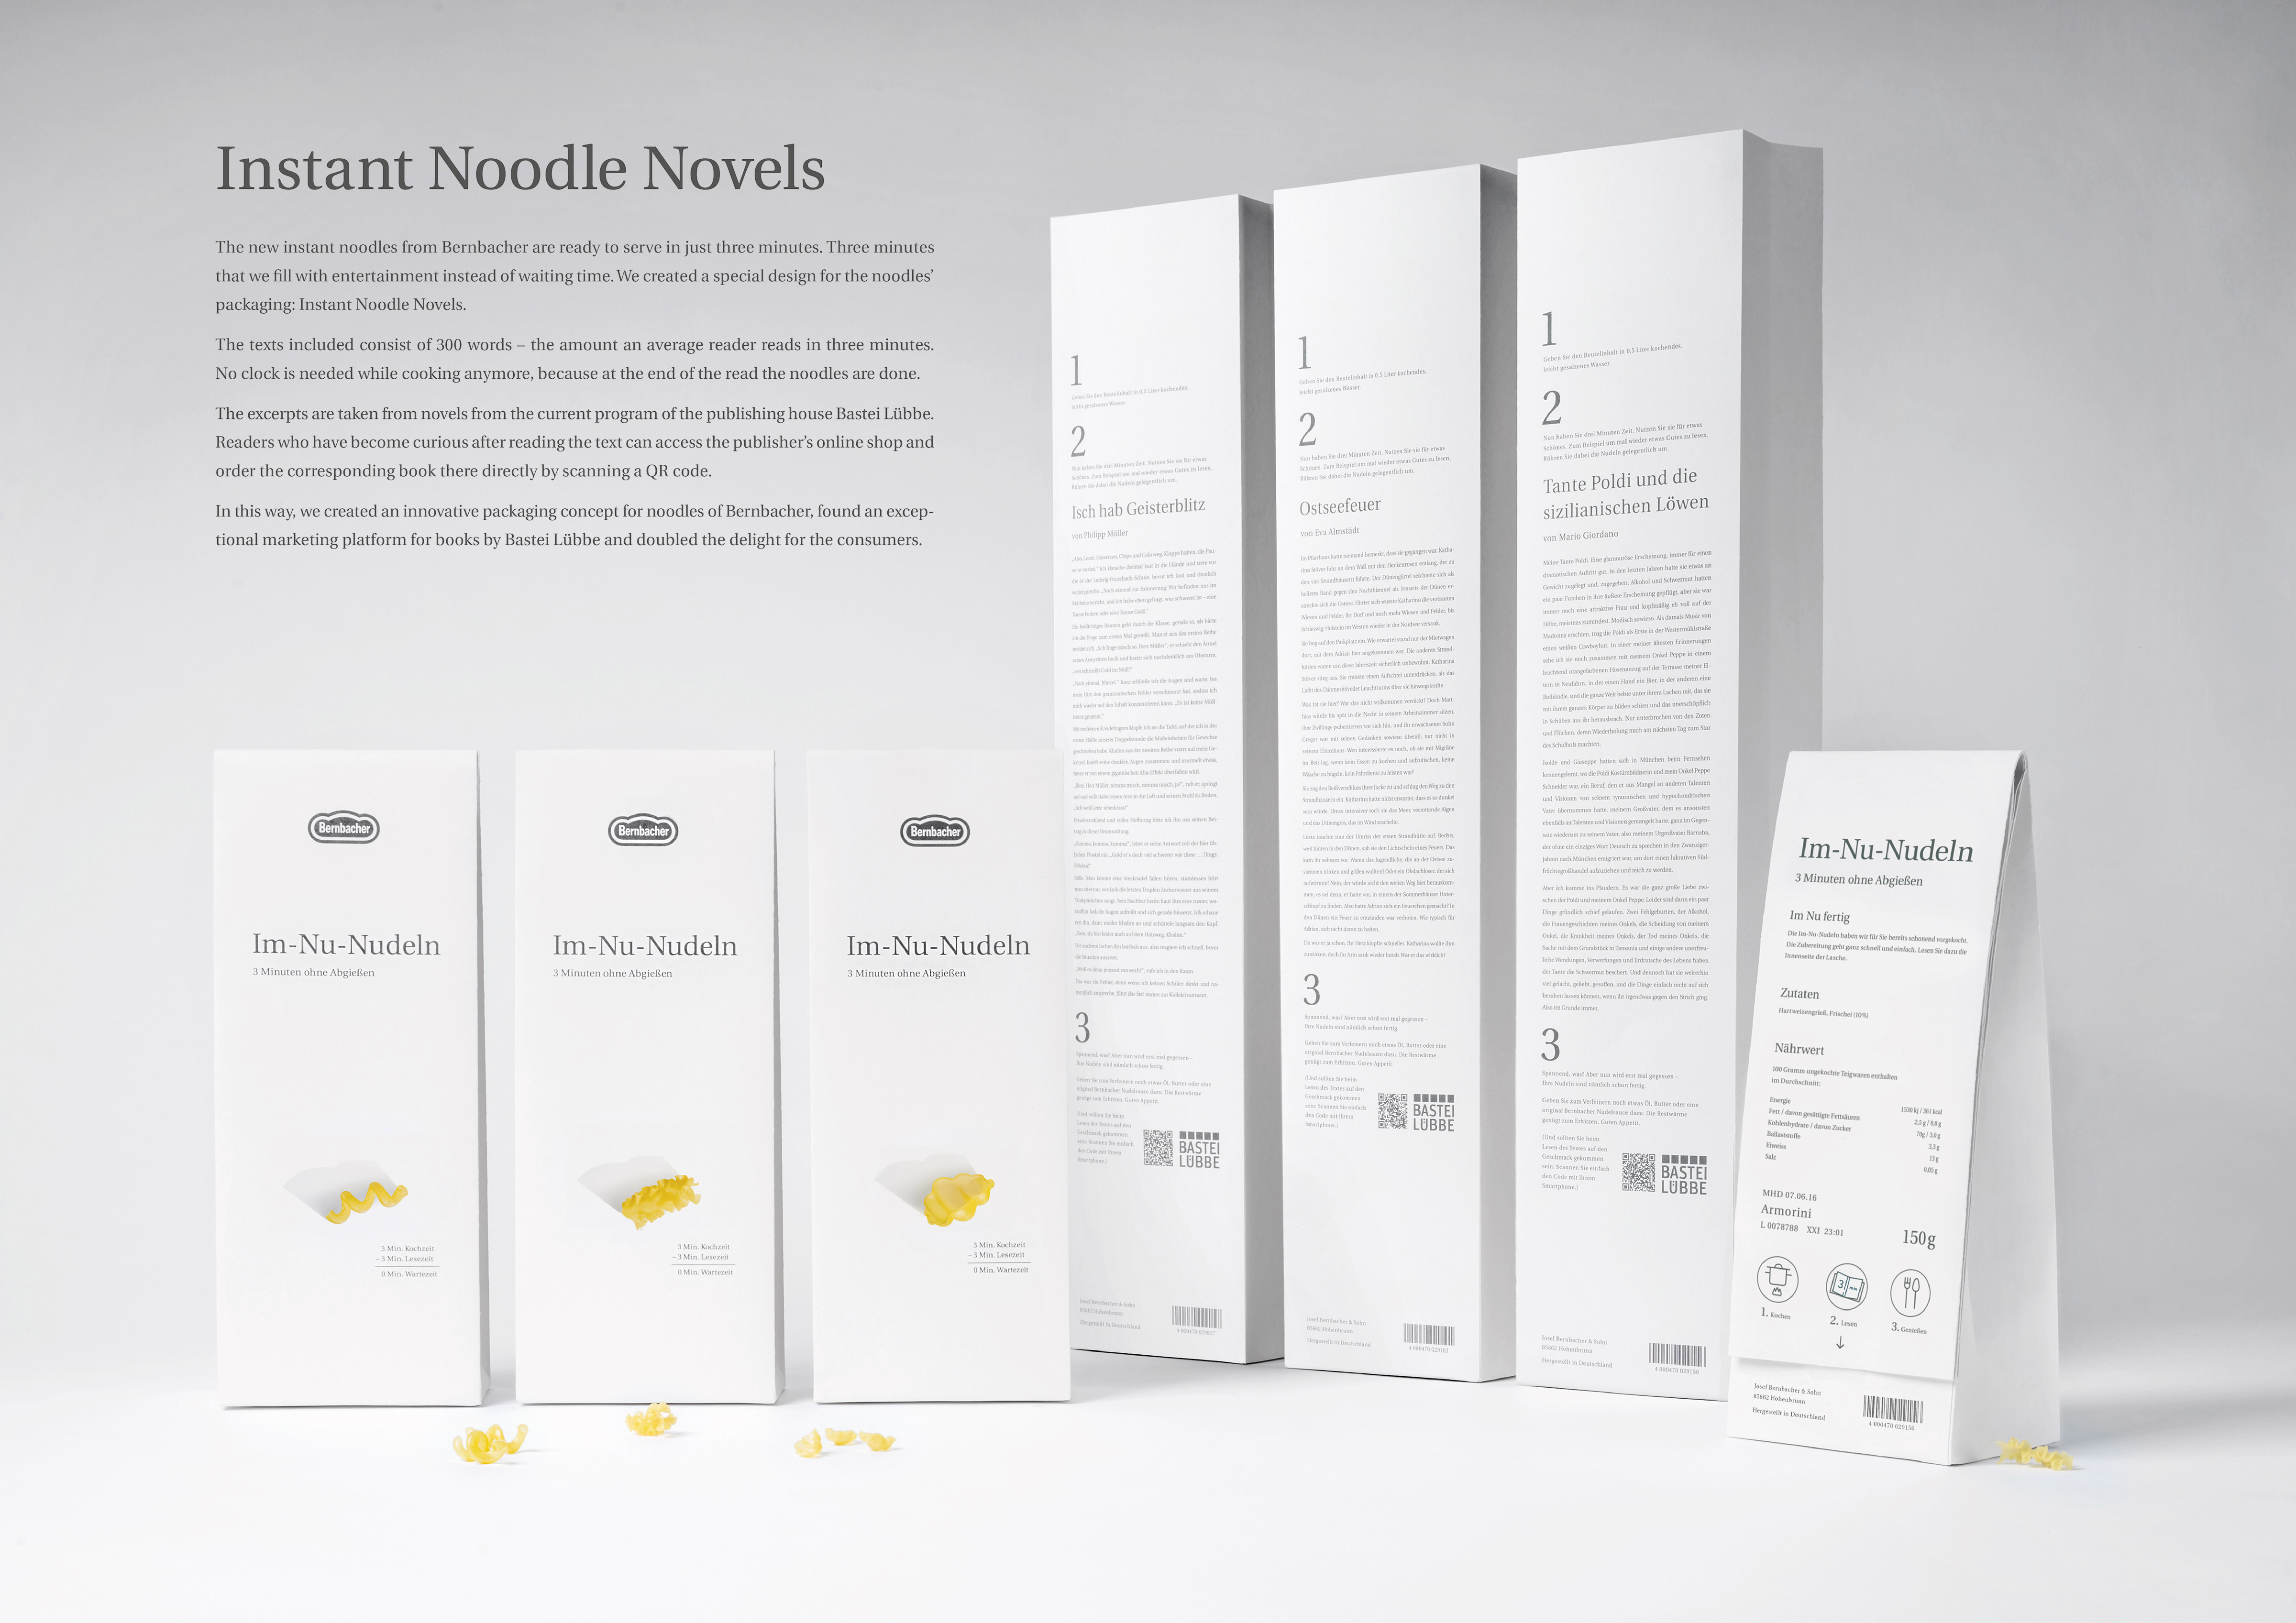 Instant Noodle Novels